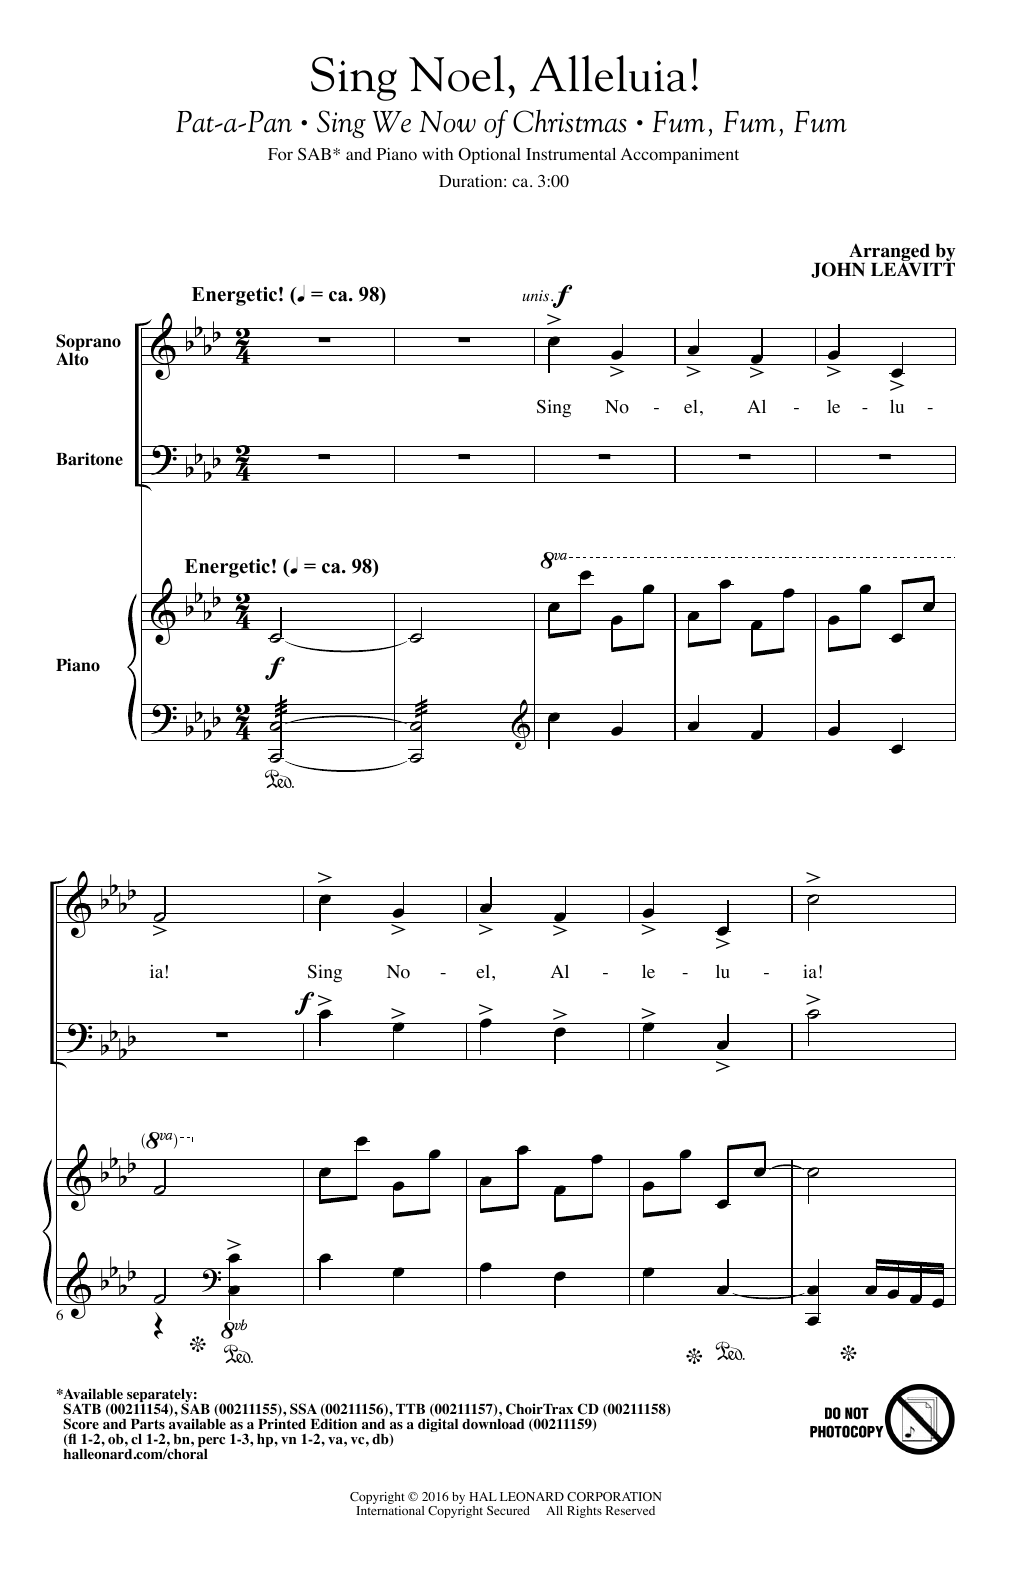 John Leavitt Sing Noel, Alleluia! sheet music notes and chords arranged for SSA Choir